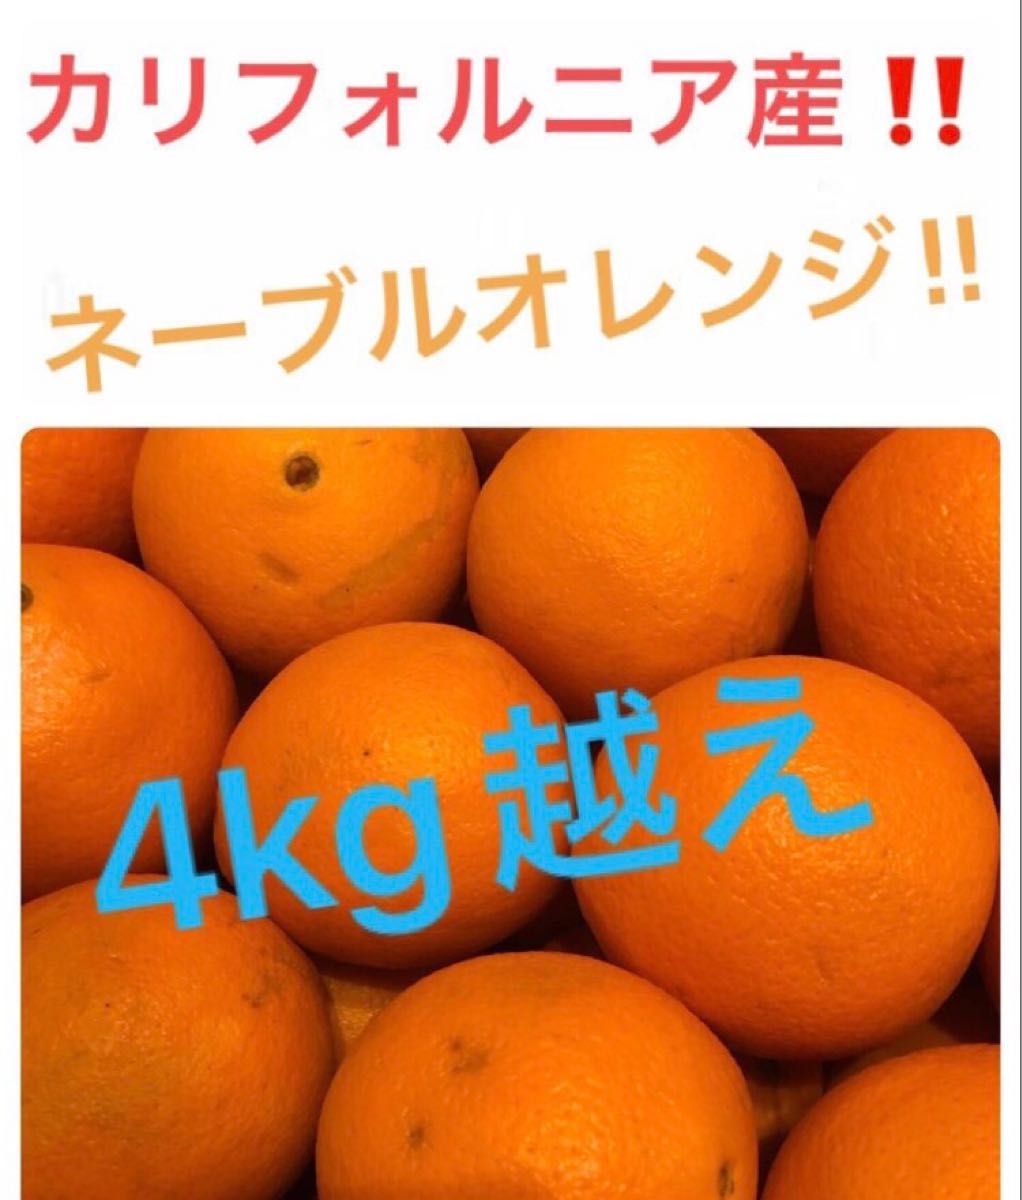 カリフォルニア産オレンジはねだし品箱込み約4kg以上